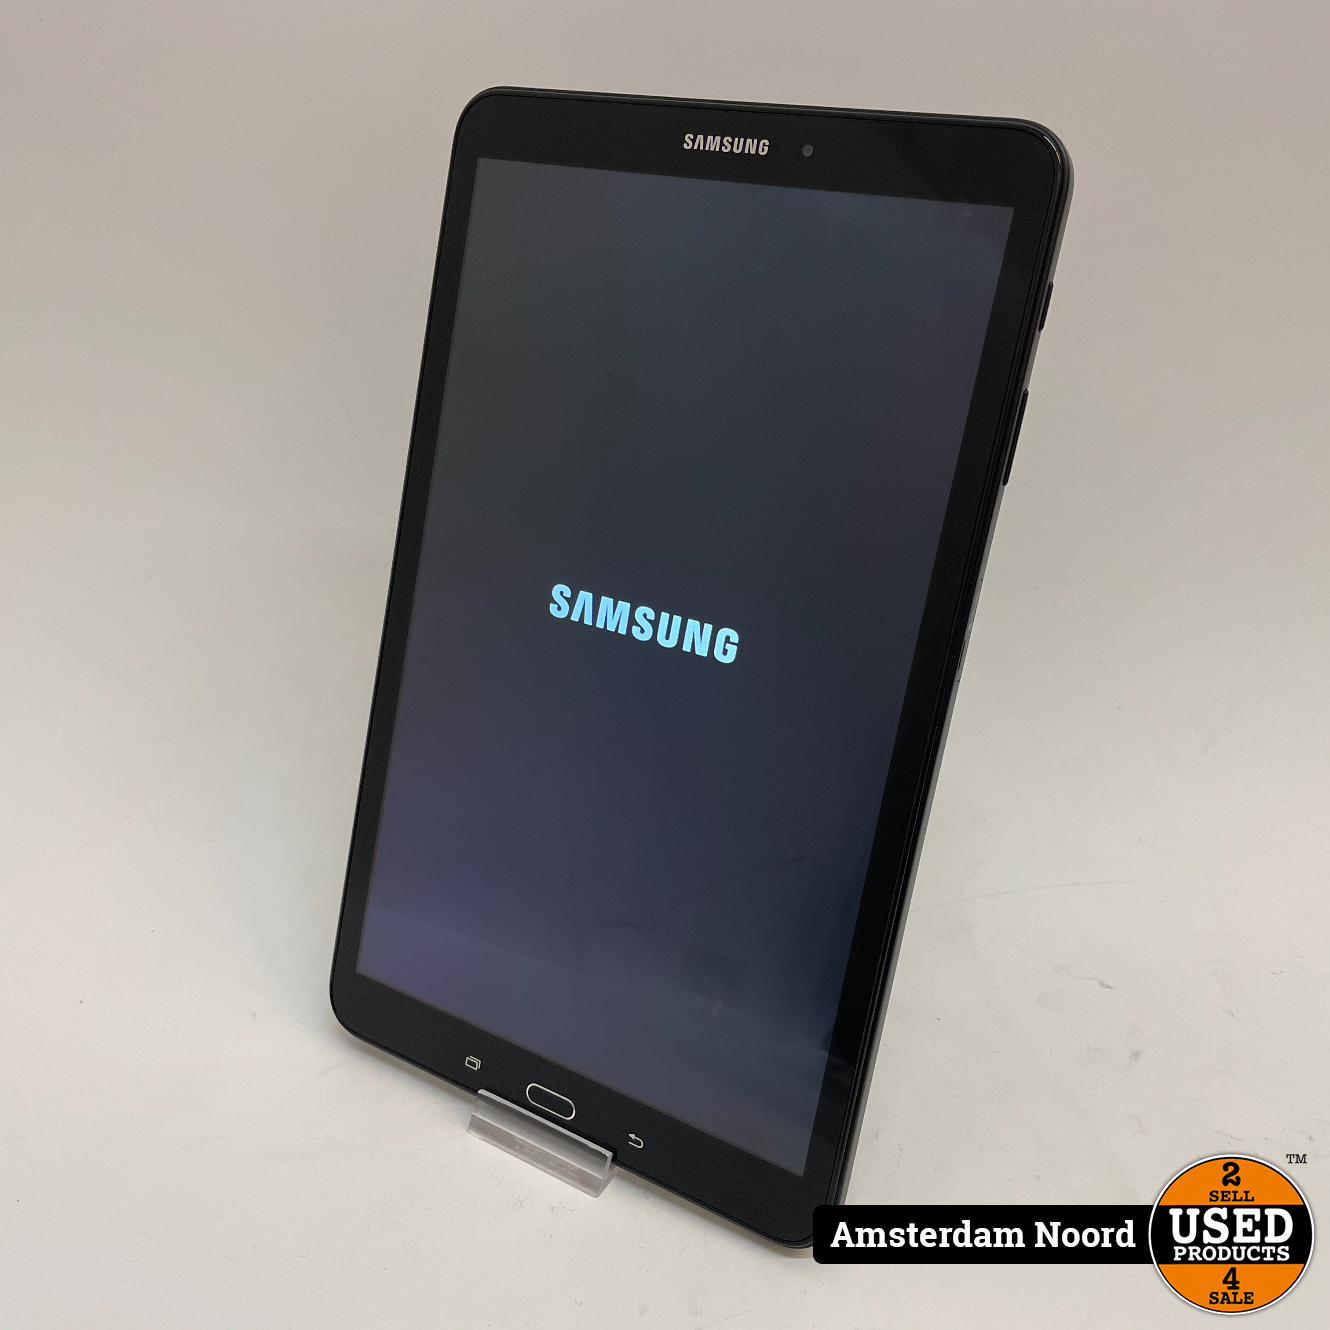 Samsung Galaxy 2016 10.1-inch 16GB - Used Products Amsterdam